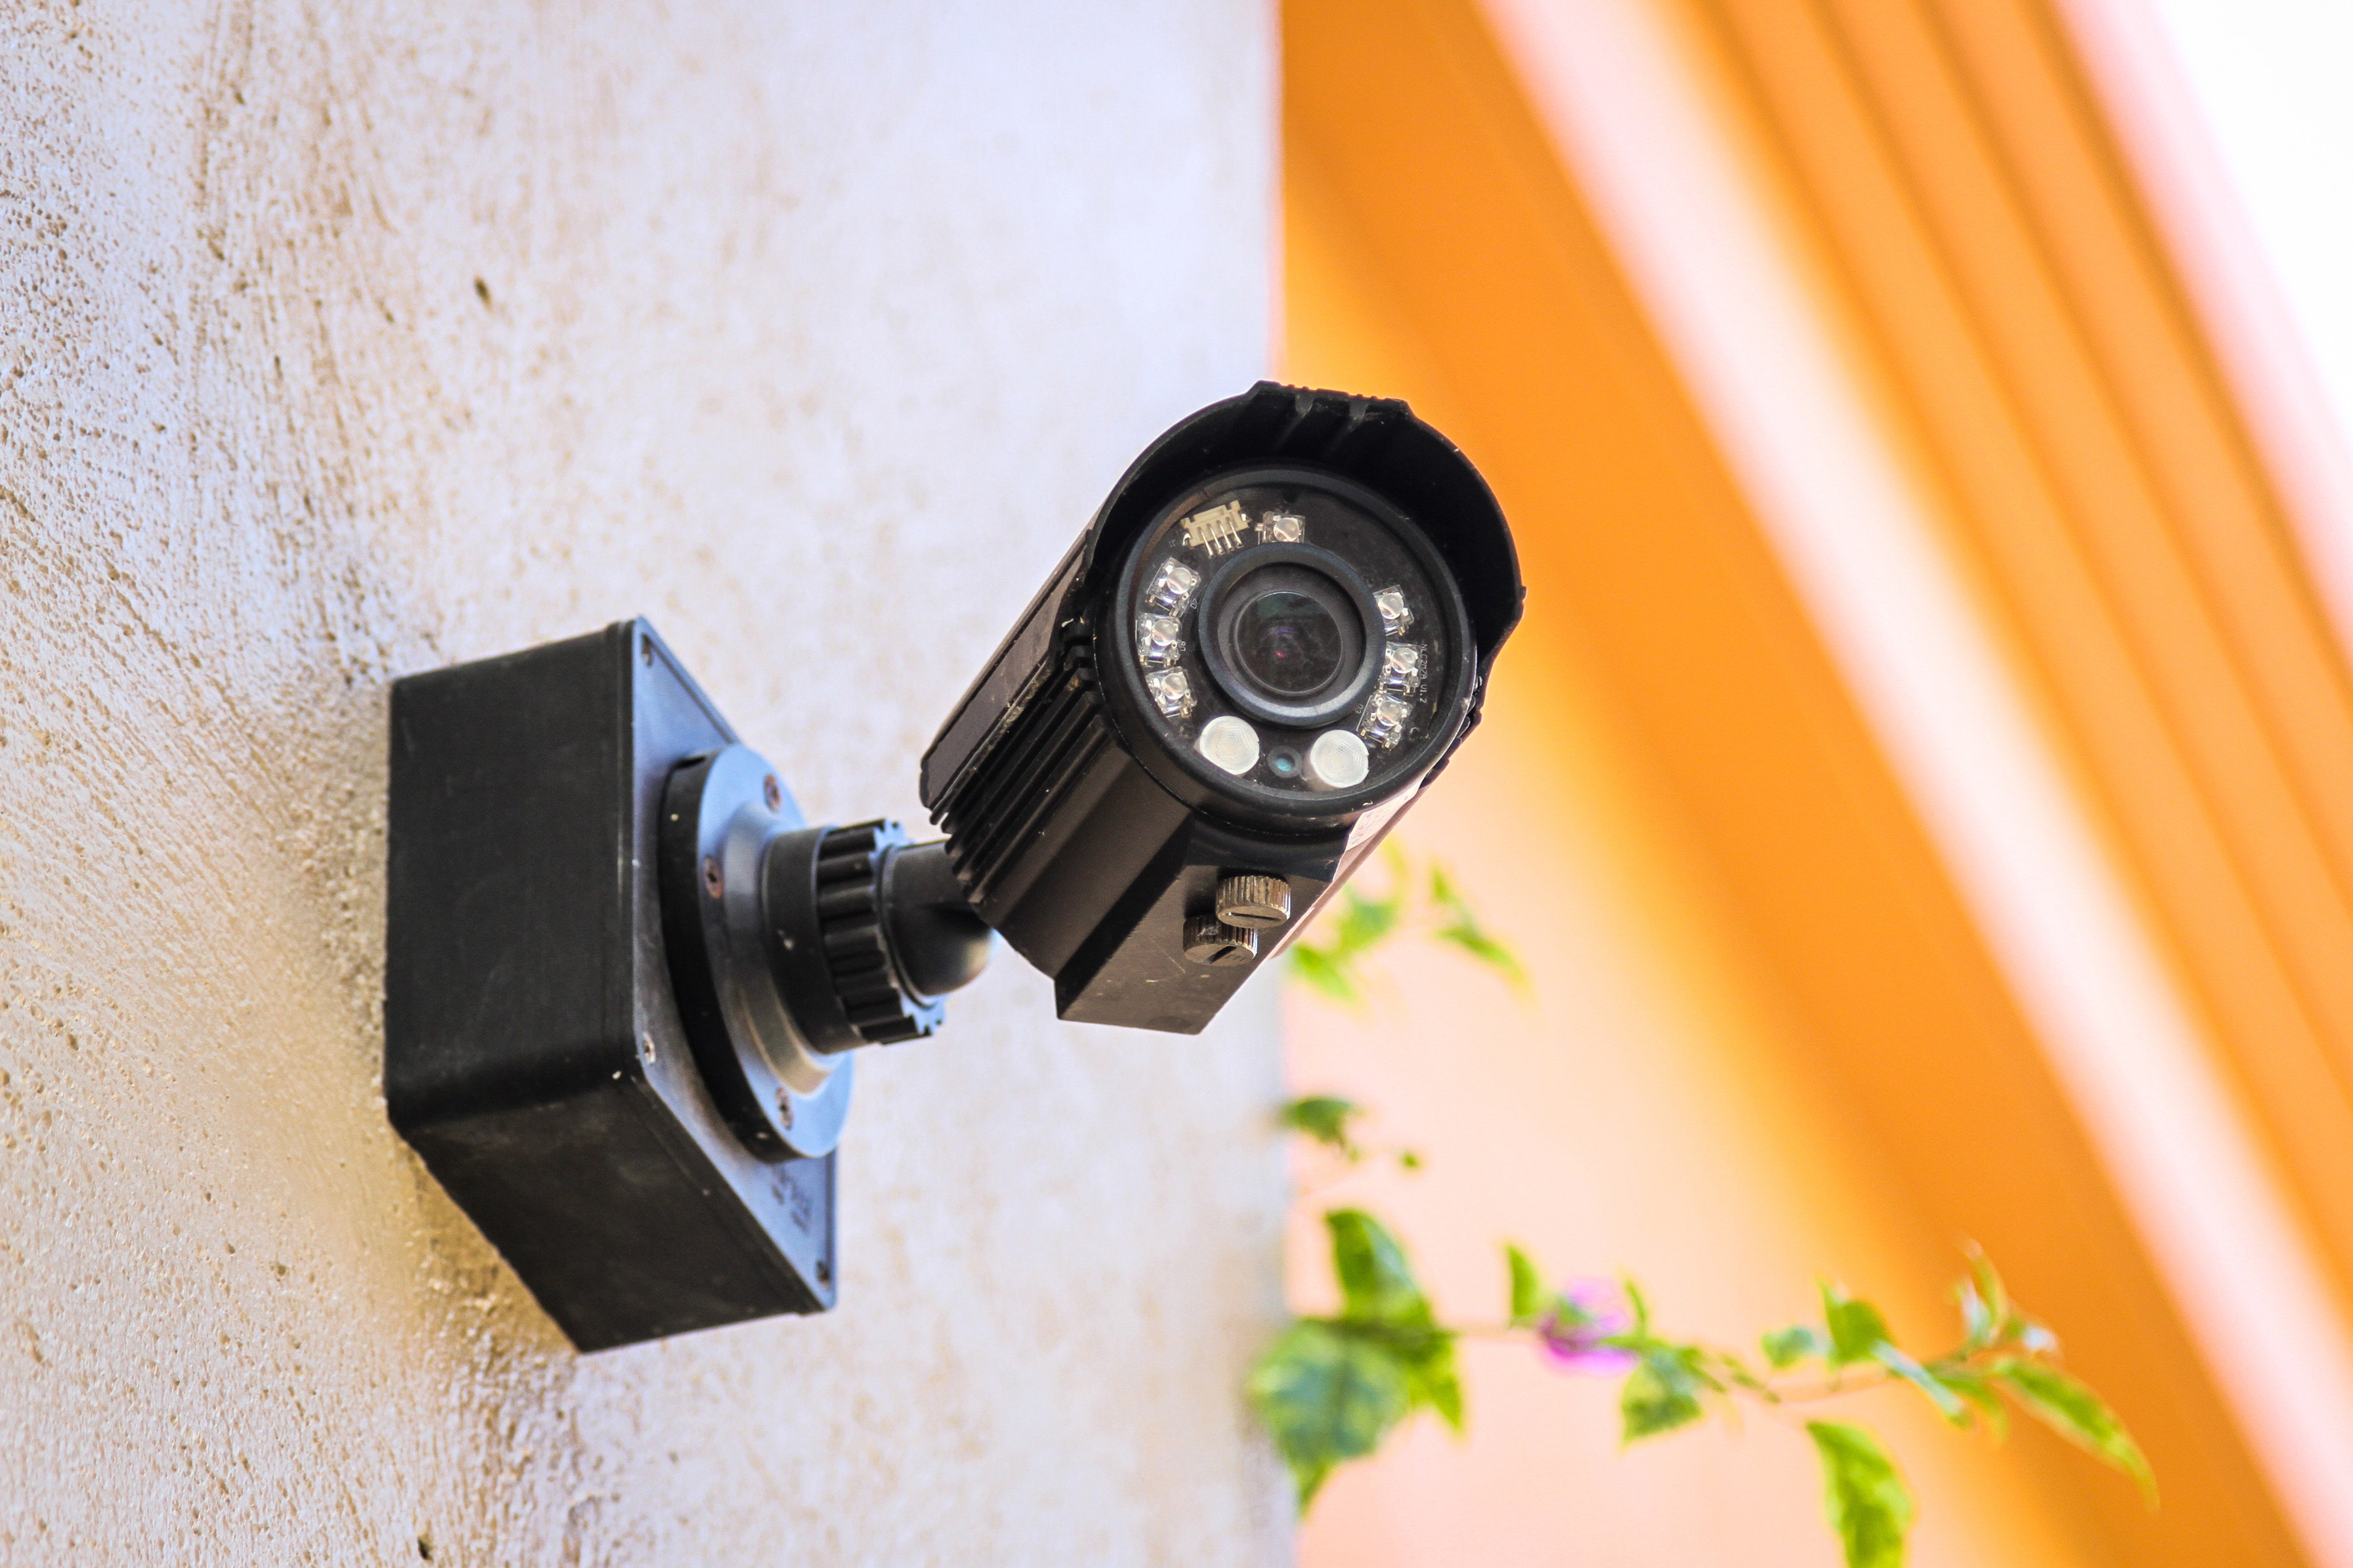 Security Cameras, Surveillance Cameras